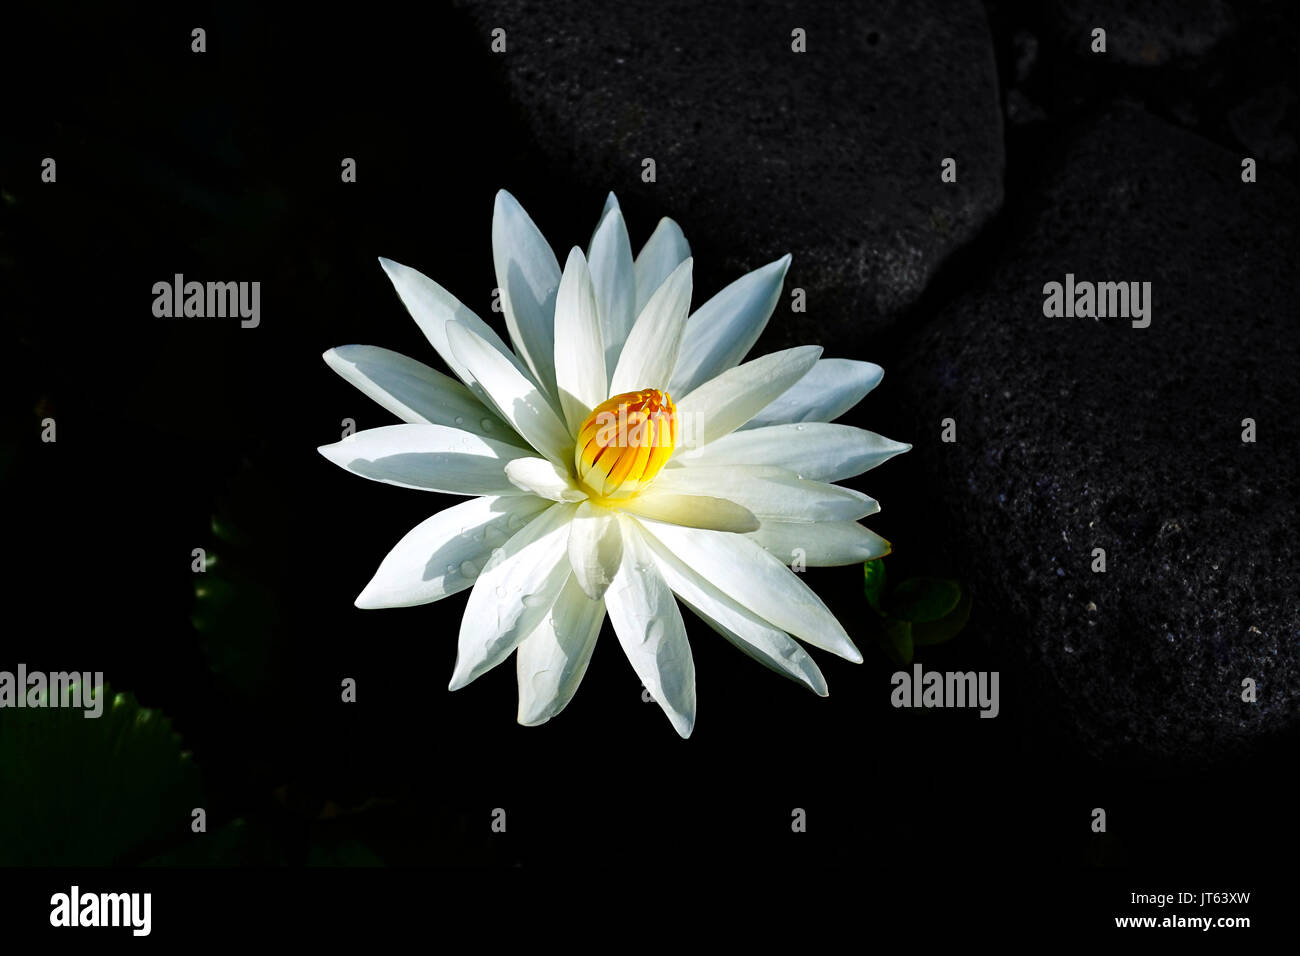 Nahaufnahme einer offenen Lotus Blume mit weißen Blütenblättern und geschlossene gelbe Kern in einem dunklen See. Stockfoto